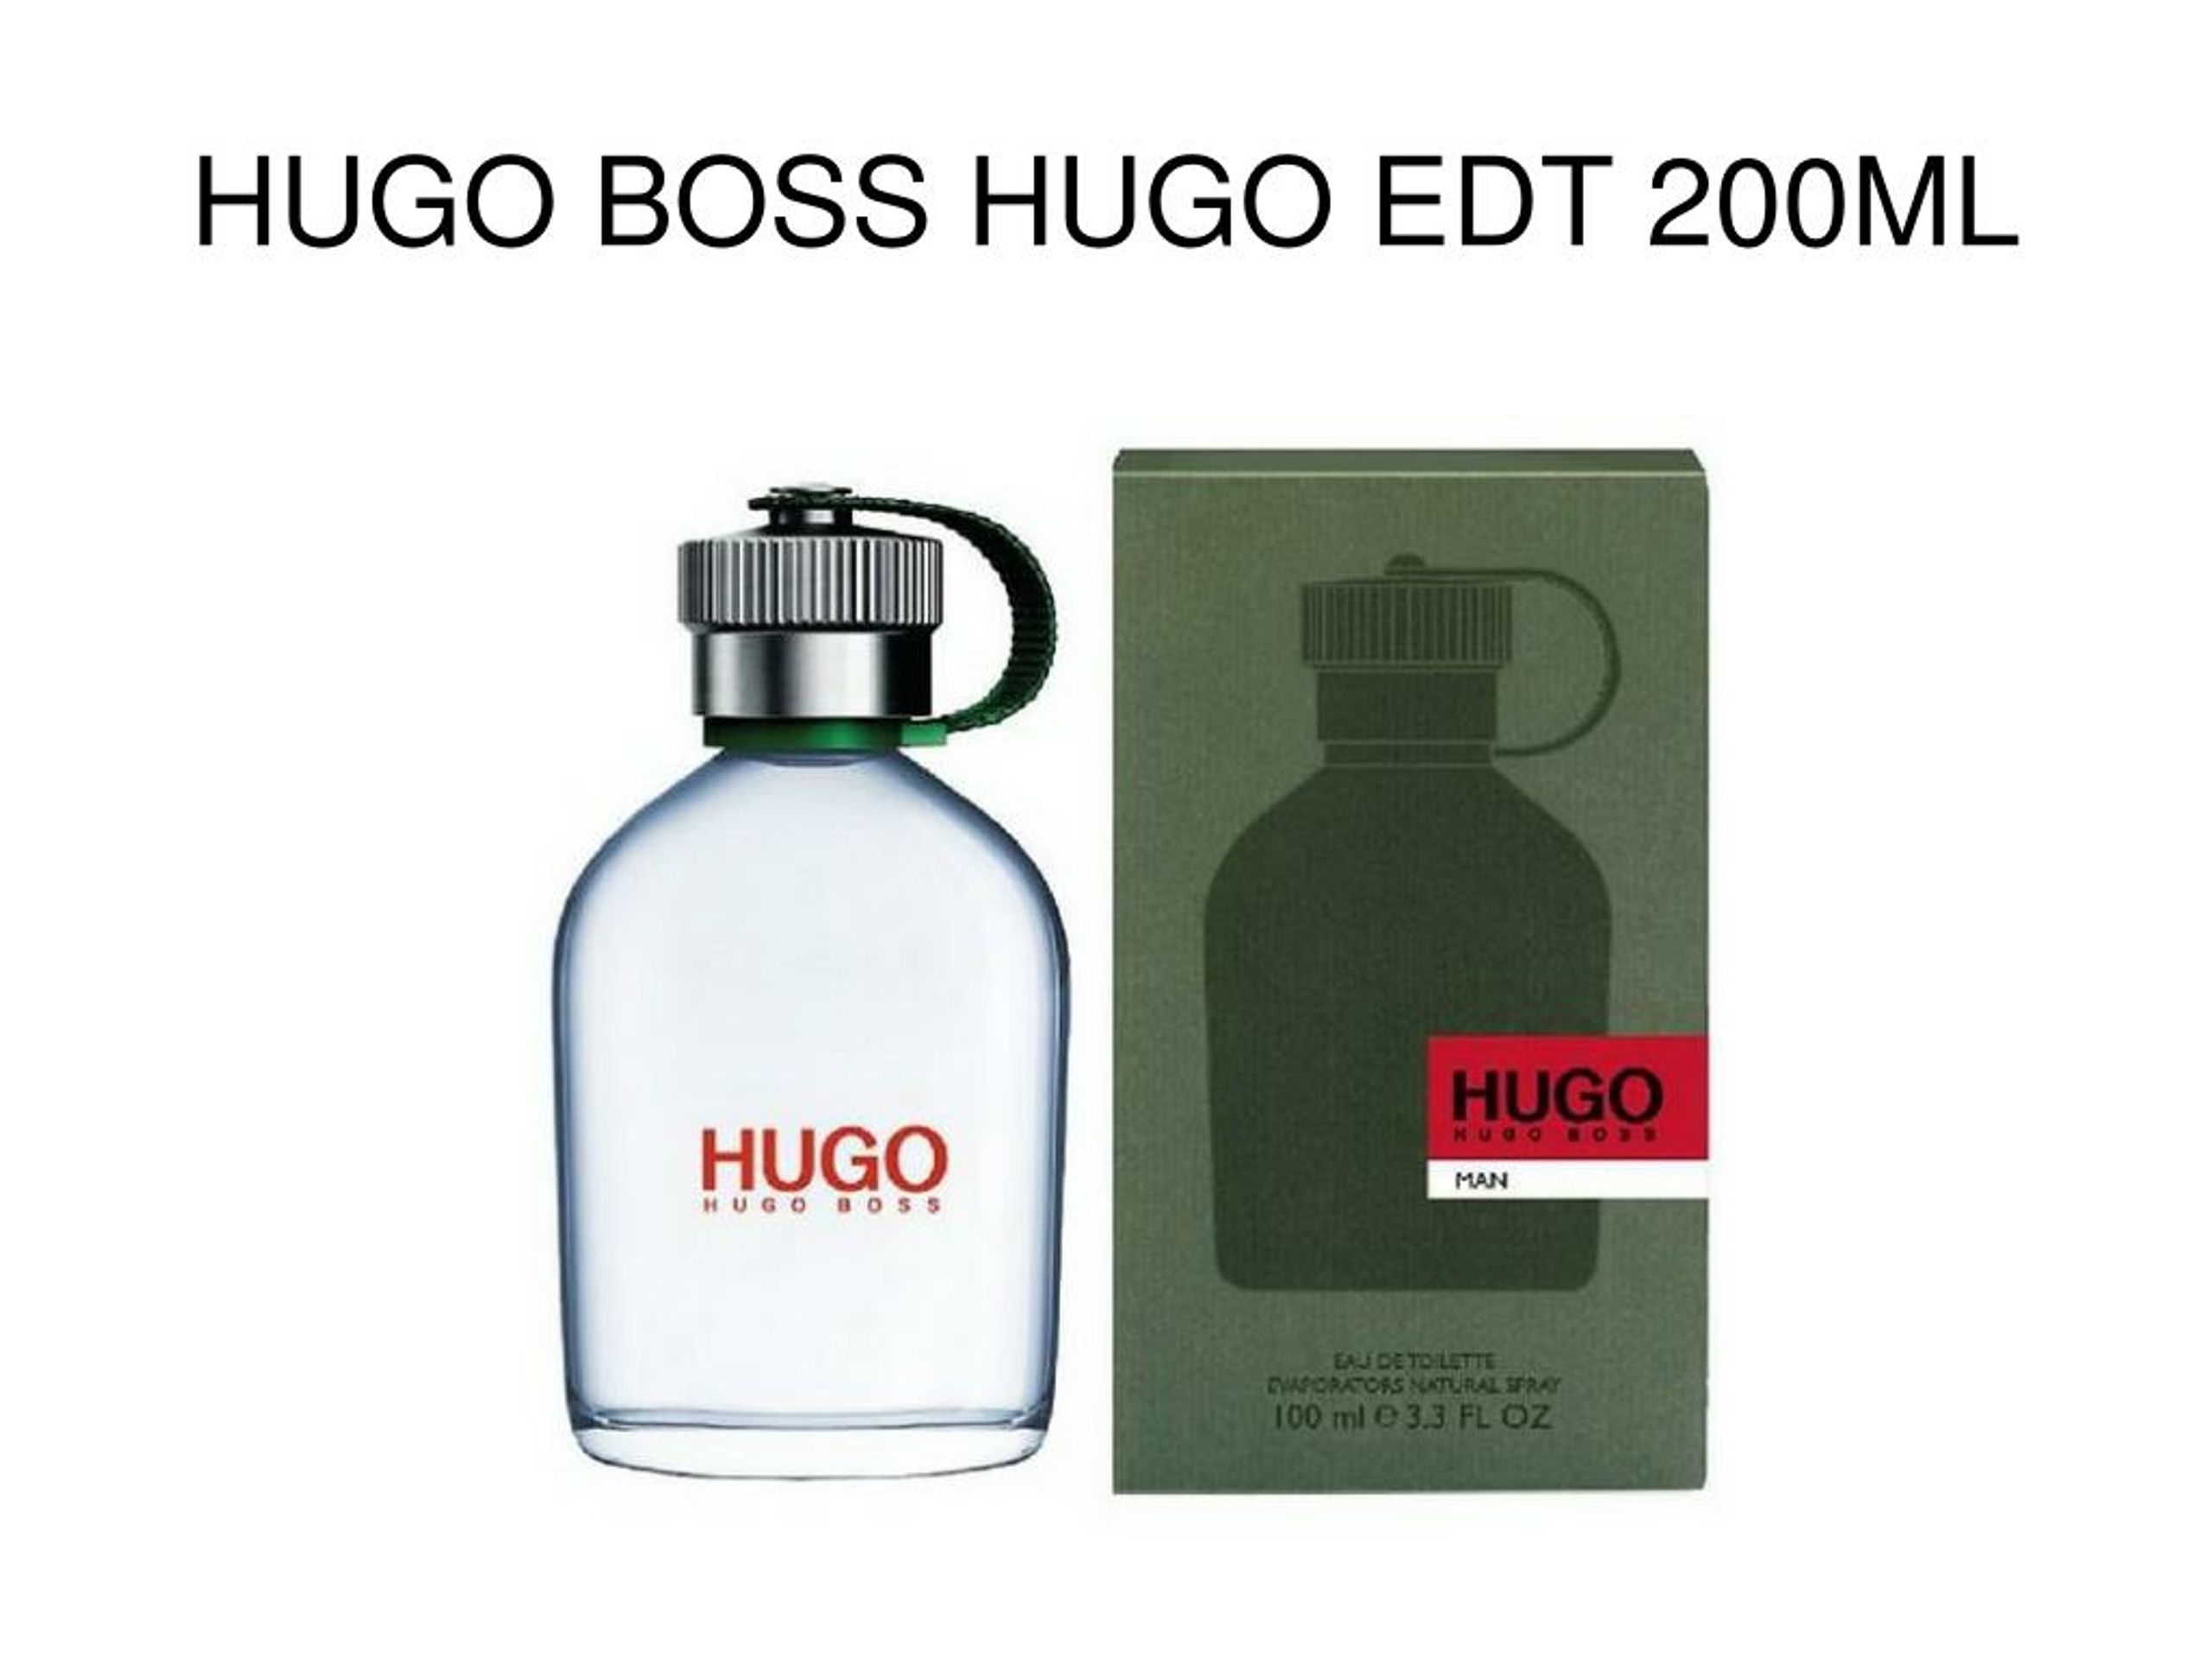 Hugo me. Hugo Boss этикетка. Хьюго босс с кактусом. Микель Матроне Hugo Boss. Hugo Boss перевод на русский.